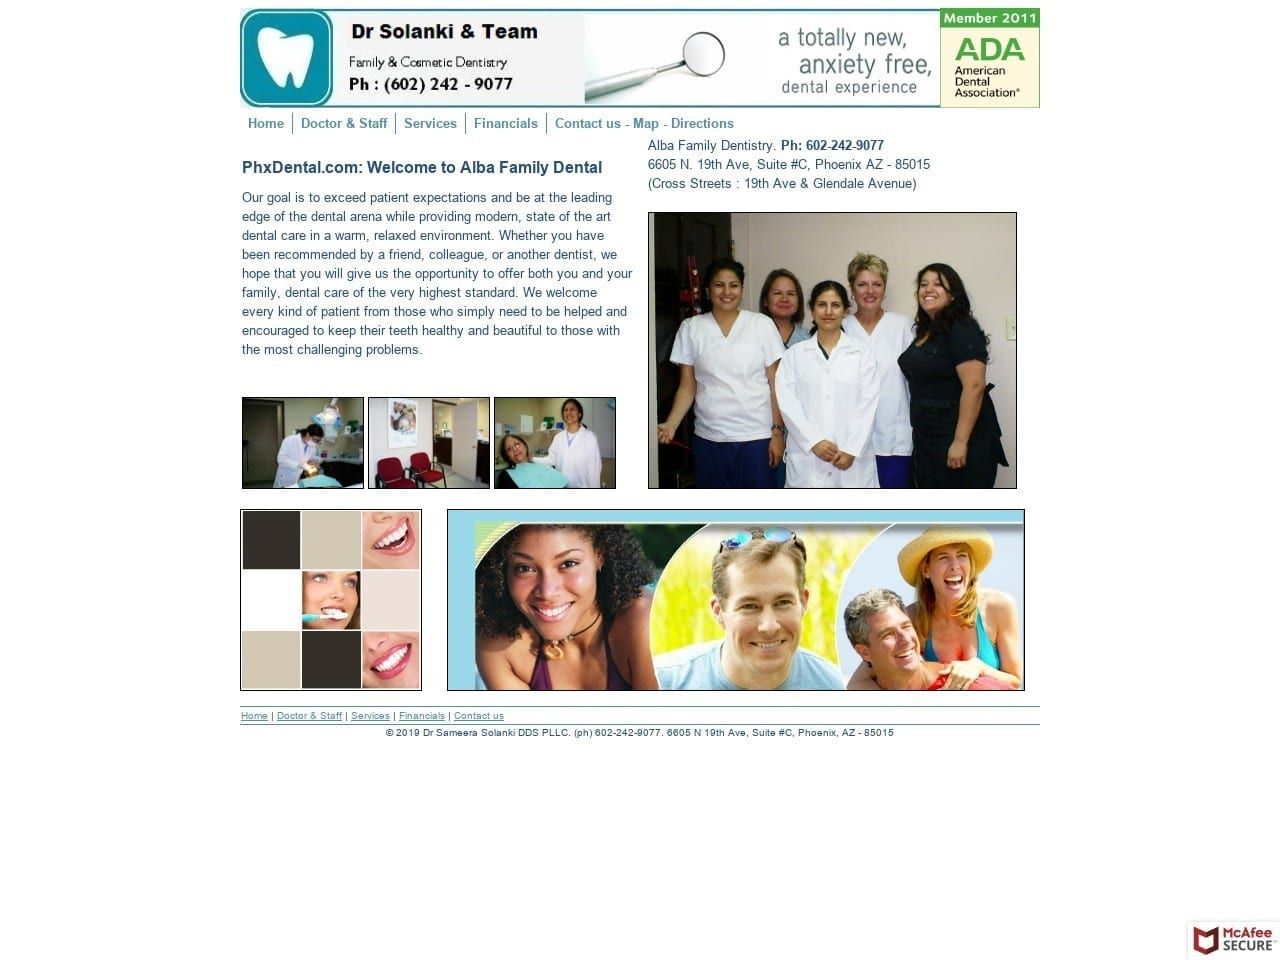 Alba Family Dental Website Screenshot from phxdental.com